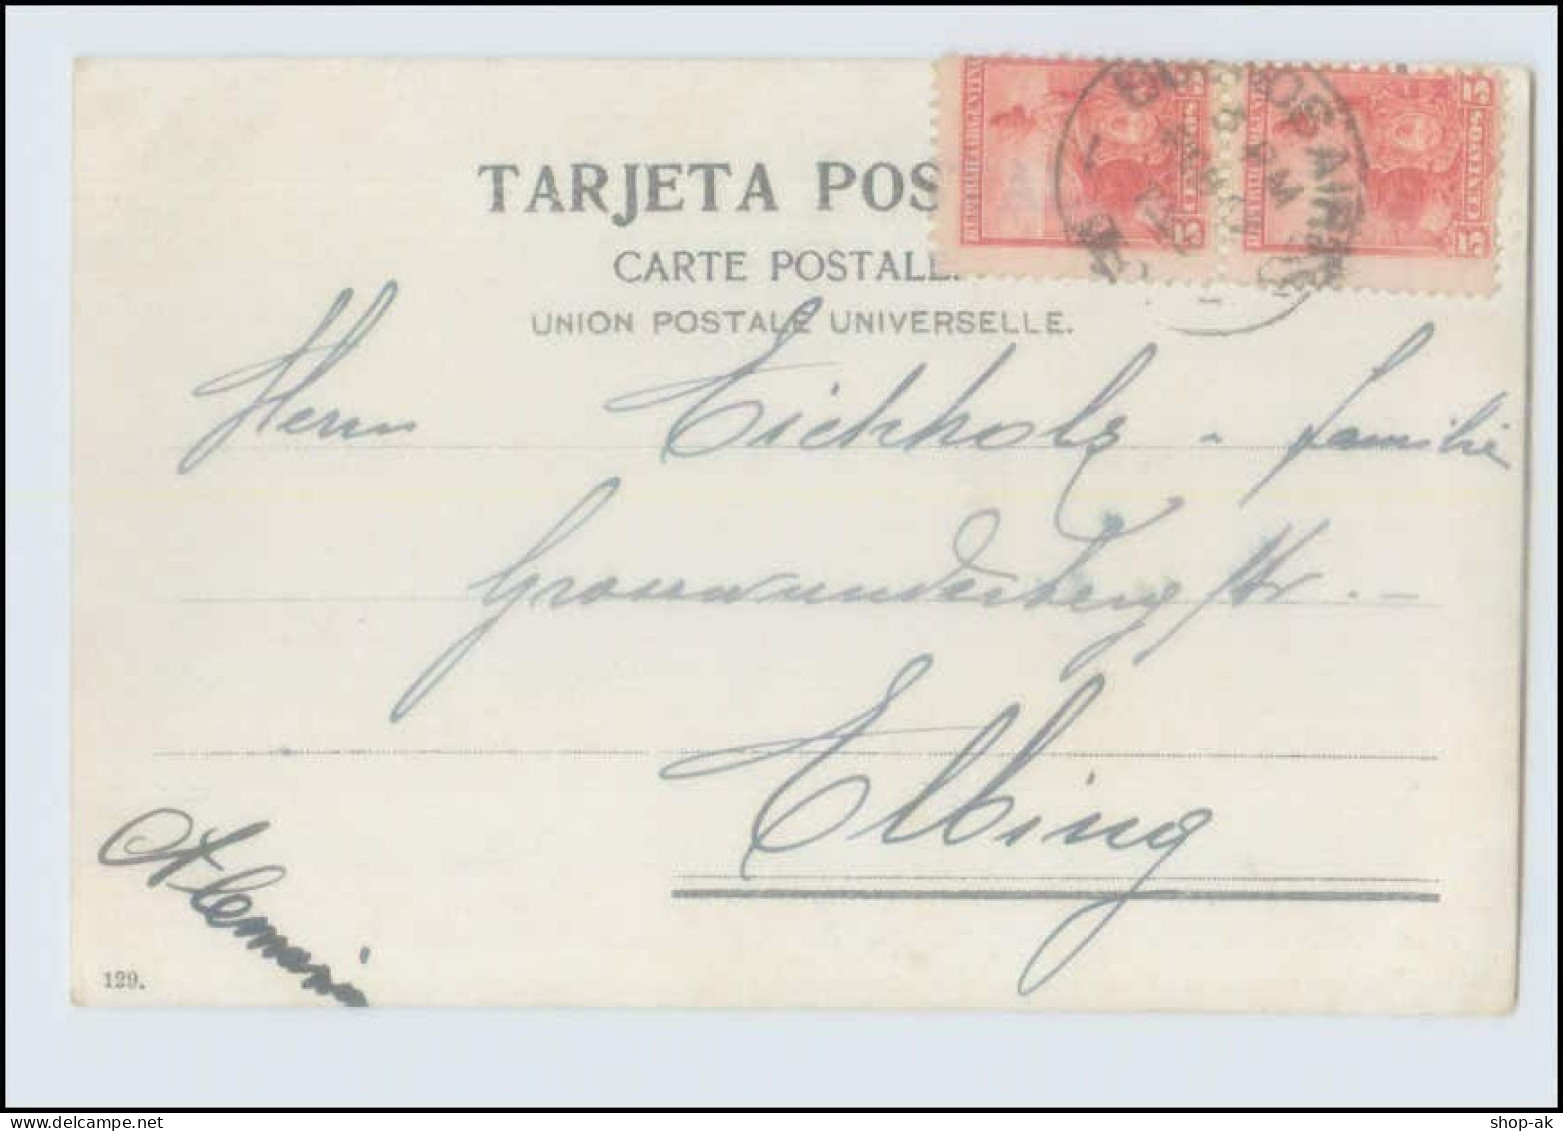 W8B88/ Rosario - Boulev. Santafecino Argentinien AK 1908 - Argentina